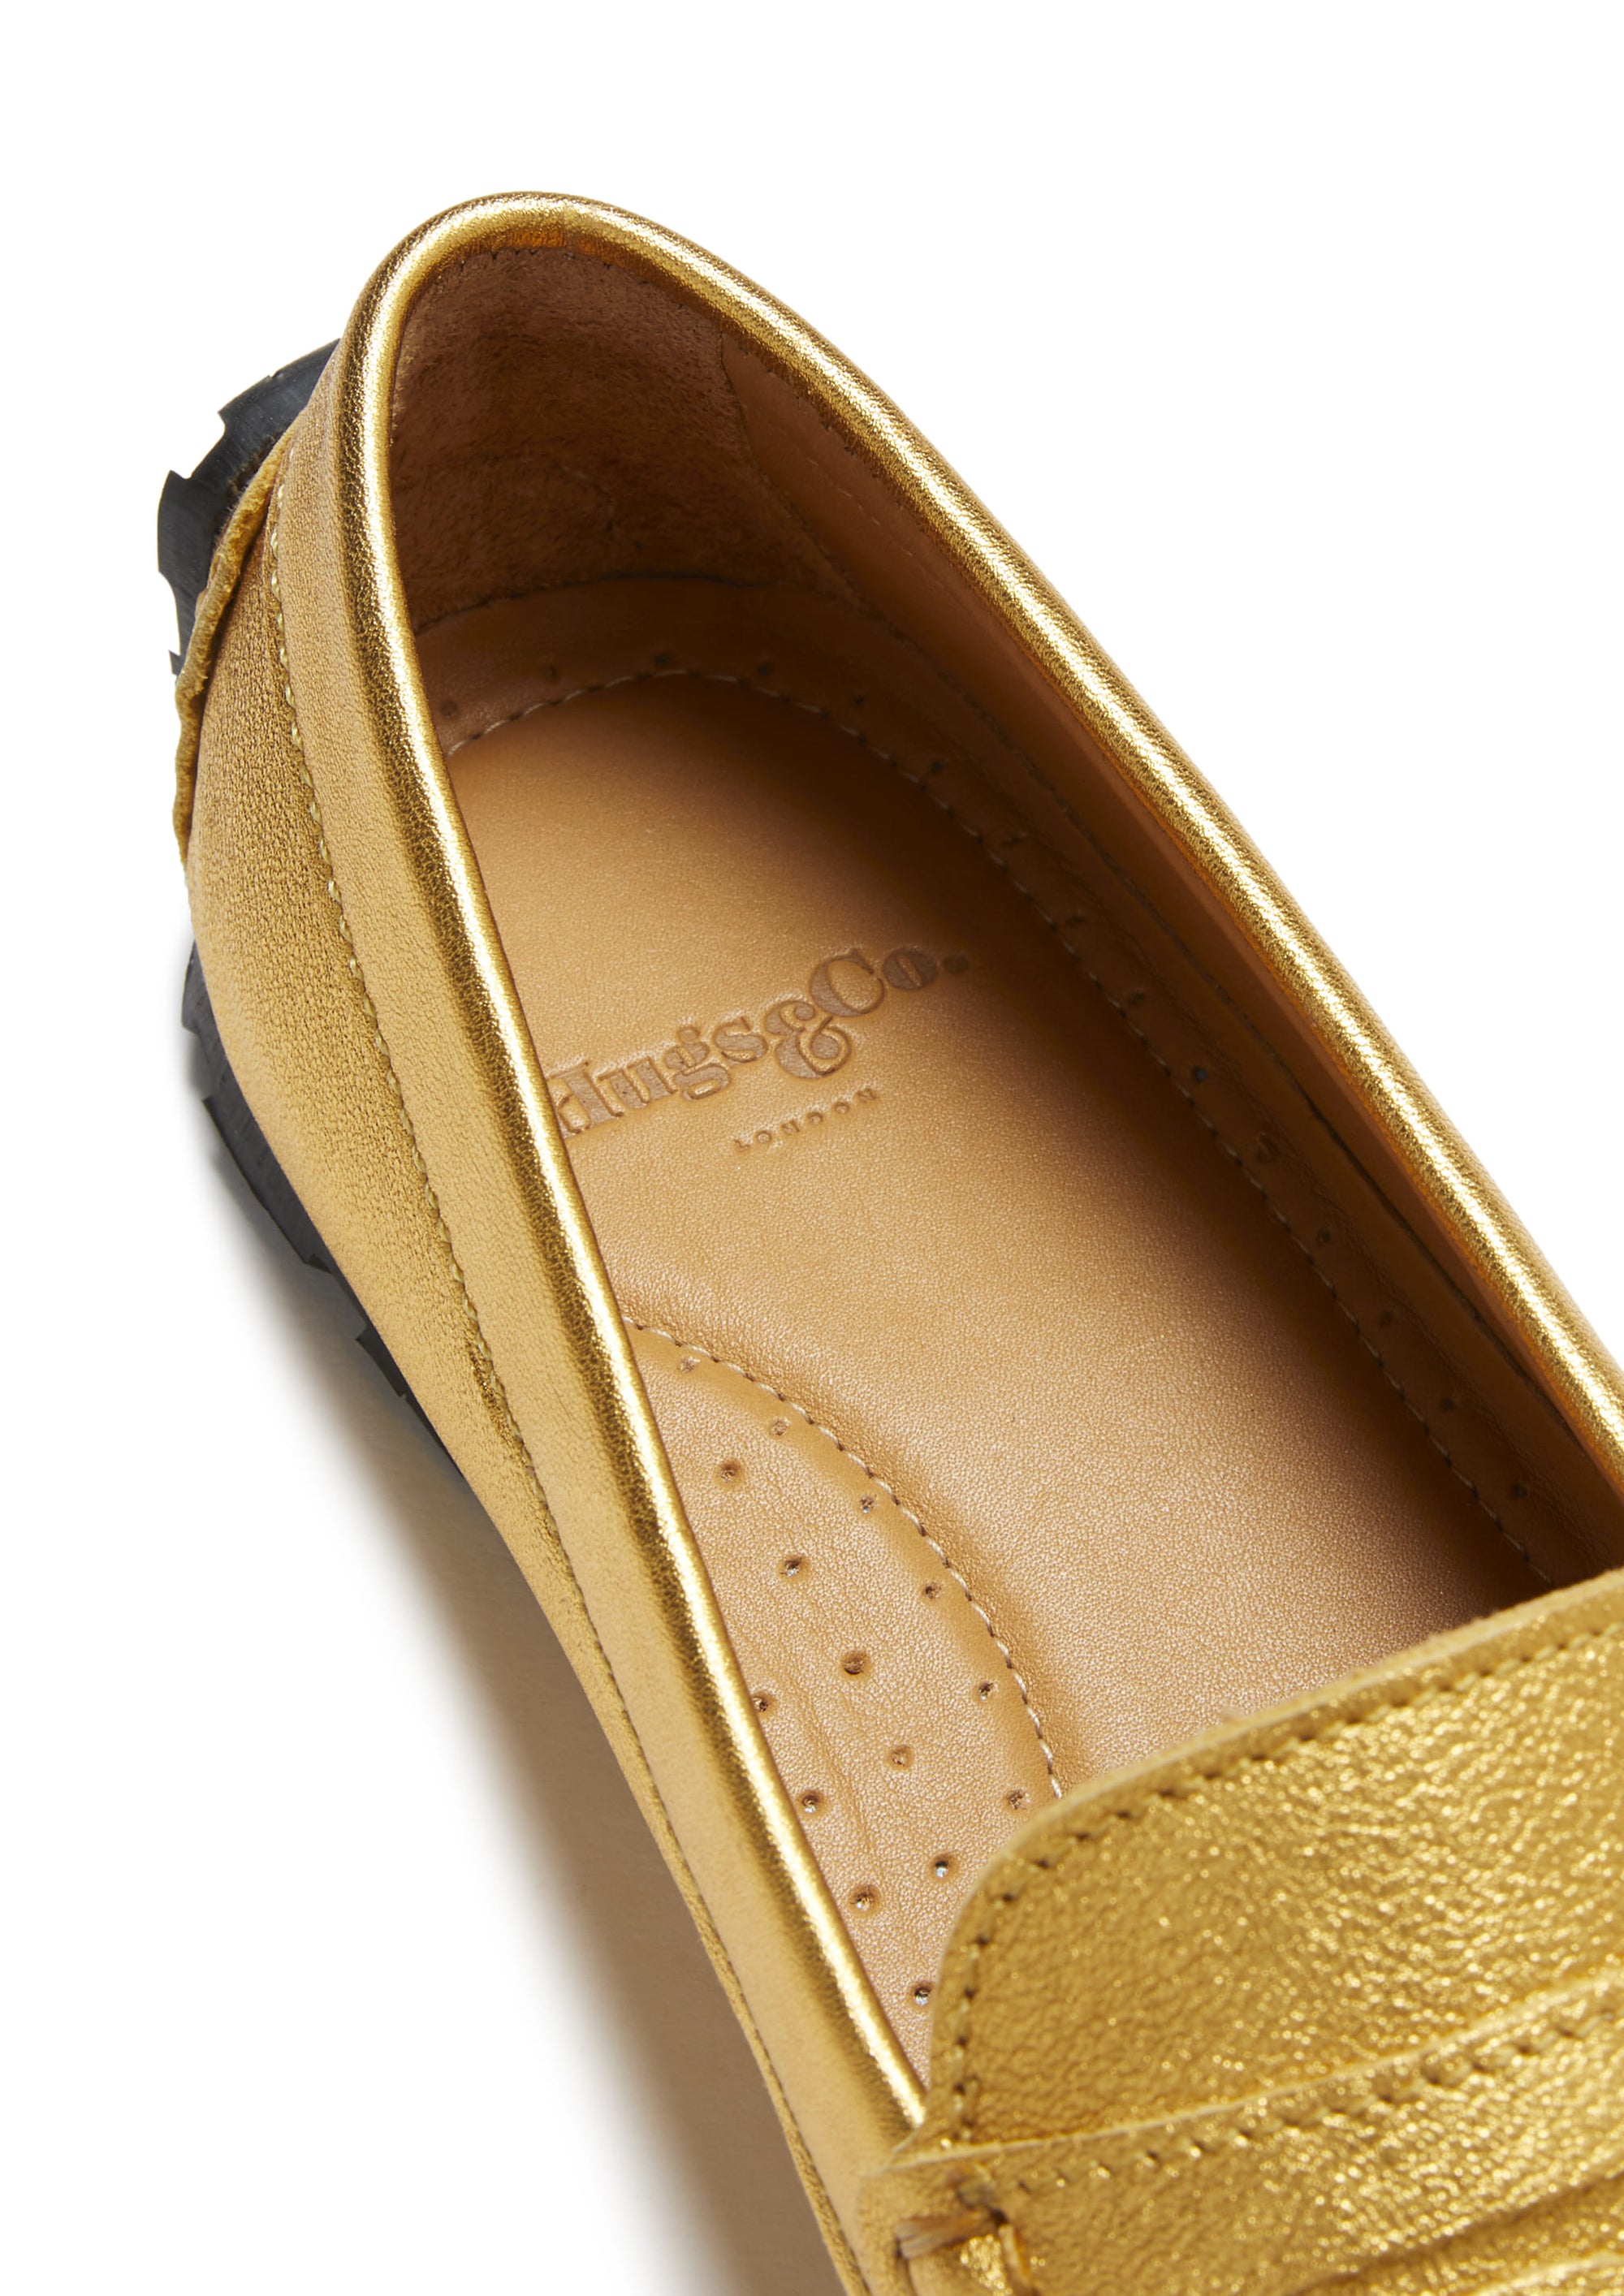 Damen-Penny-Loafer mit Reifensohle, gelbgoldenes Leder